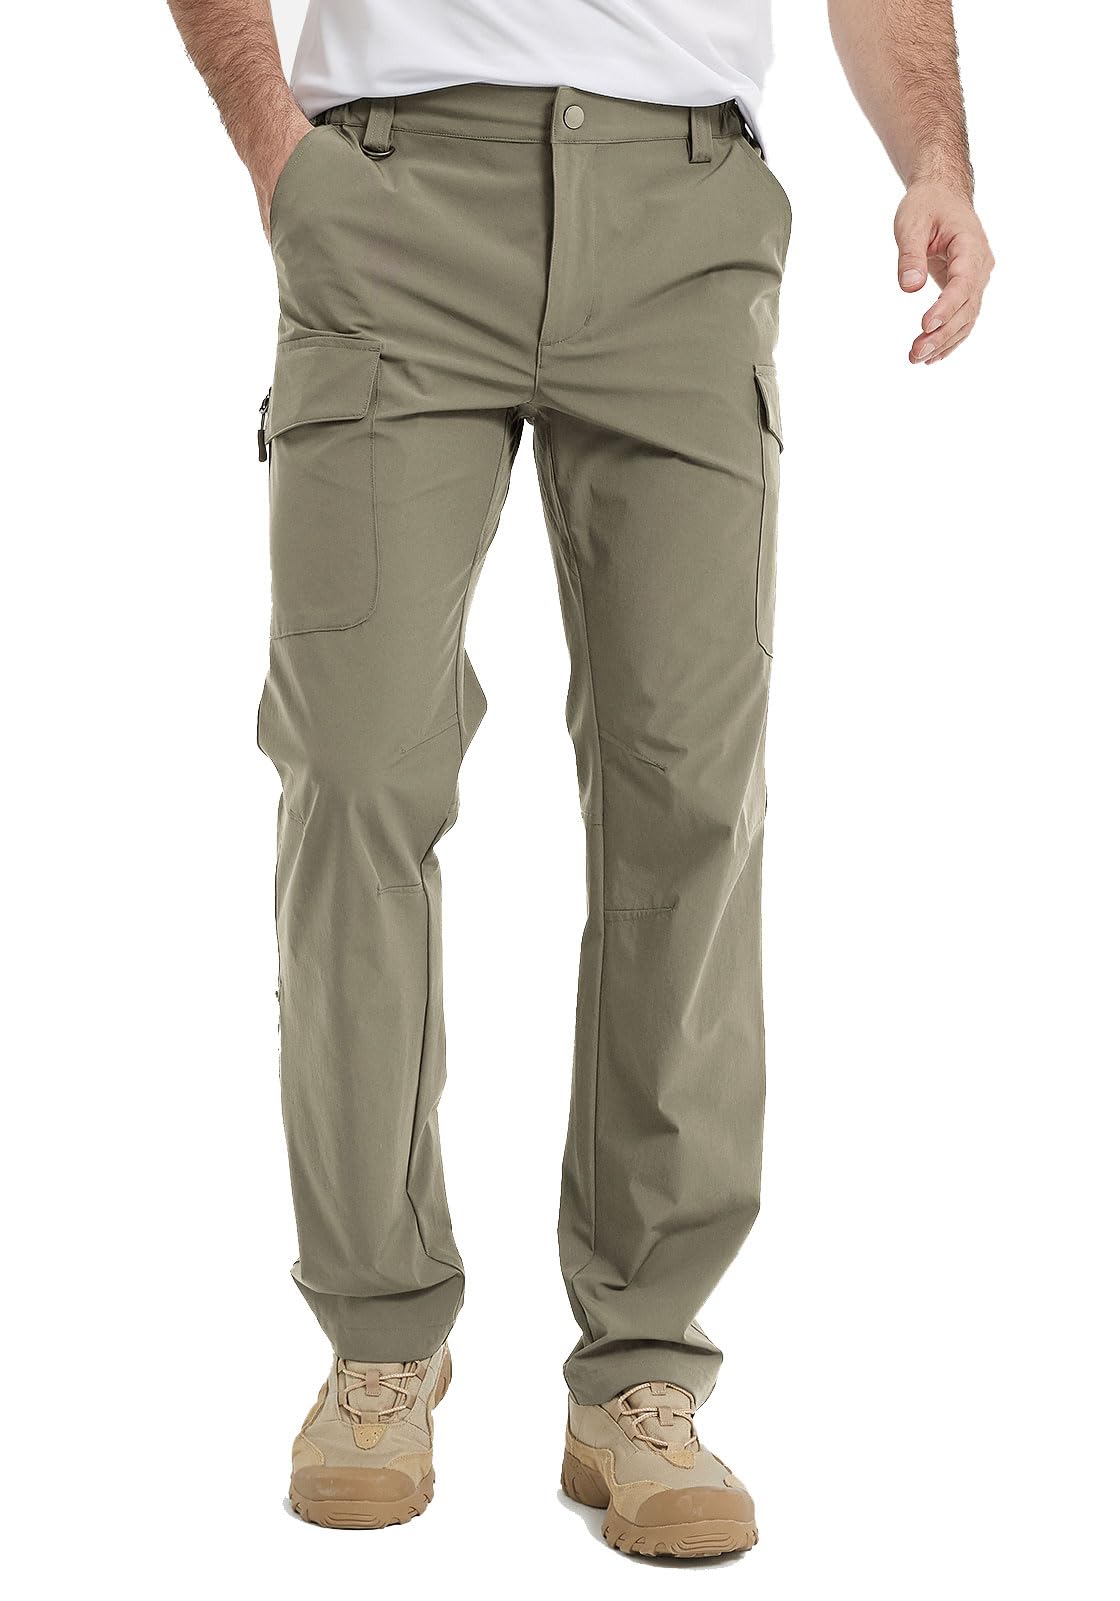 NWT Men's Tilley Outdoor Trek/ Hiking Pants, 6 Pockets, Water